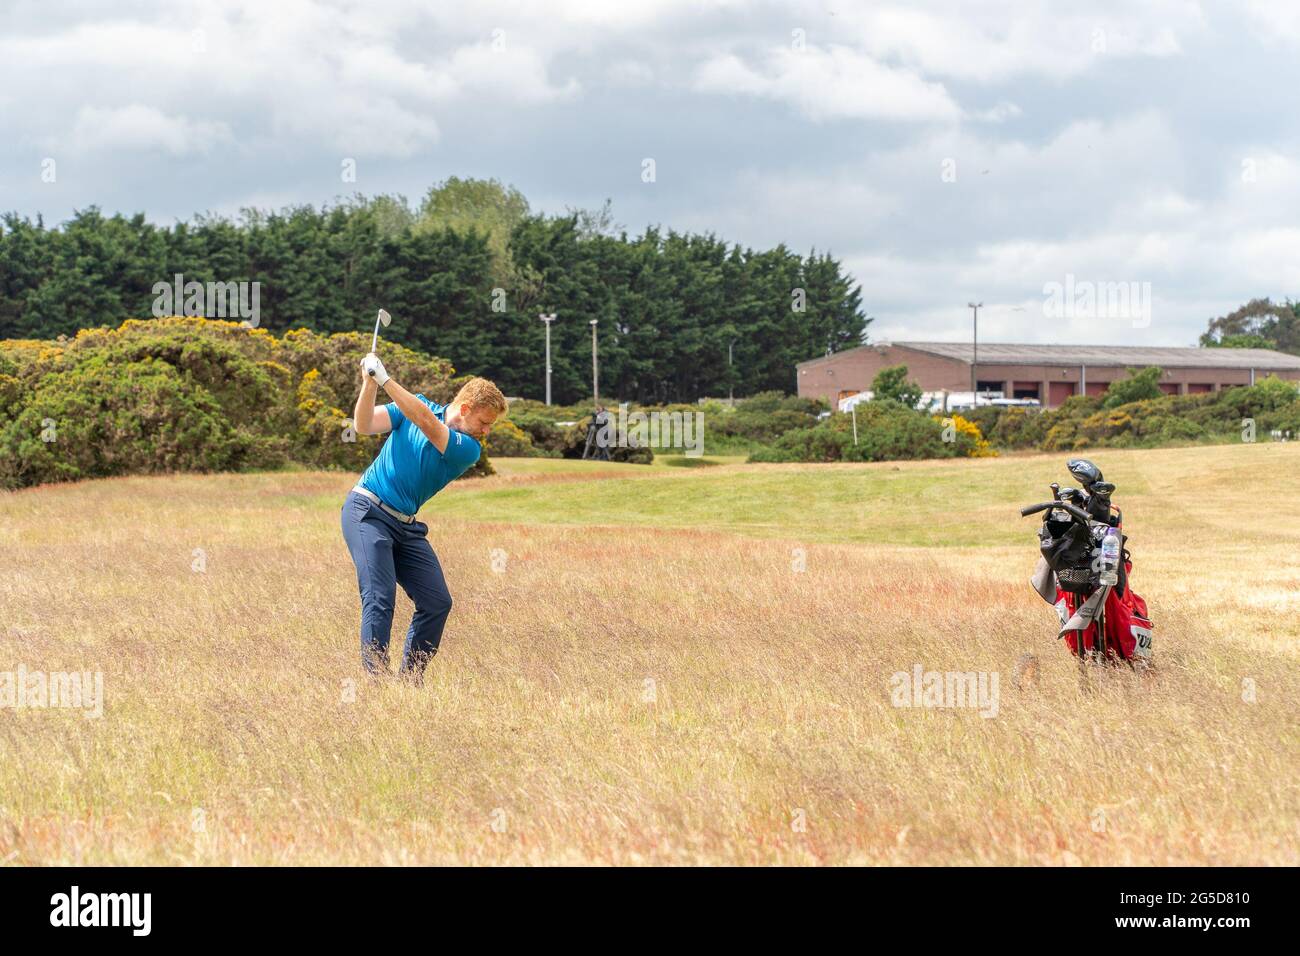 Montrose, Angus, Schottland, Großbritannien, 25. Juni 2021: In dieser Woche findet die PGA Europro Tour - The Eagle Orchid Scottish Masters - im Montrose Golf Links statt. Spielen auf dem fünftältesten Golfplatz der Welt. (Kurs 1562) heute ist die letzte Runde, die sehen die lokalen Golf-Profi Sean Lawrie in Streit. (Sean Lawrie Center) Putting for Birdie am 9. (Credit-Barry Nixon/Alamy Live News) Stockfoto